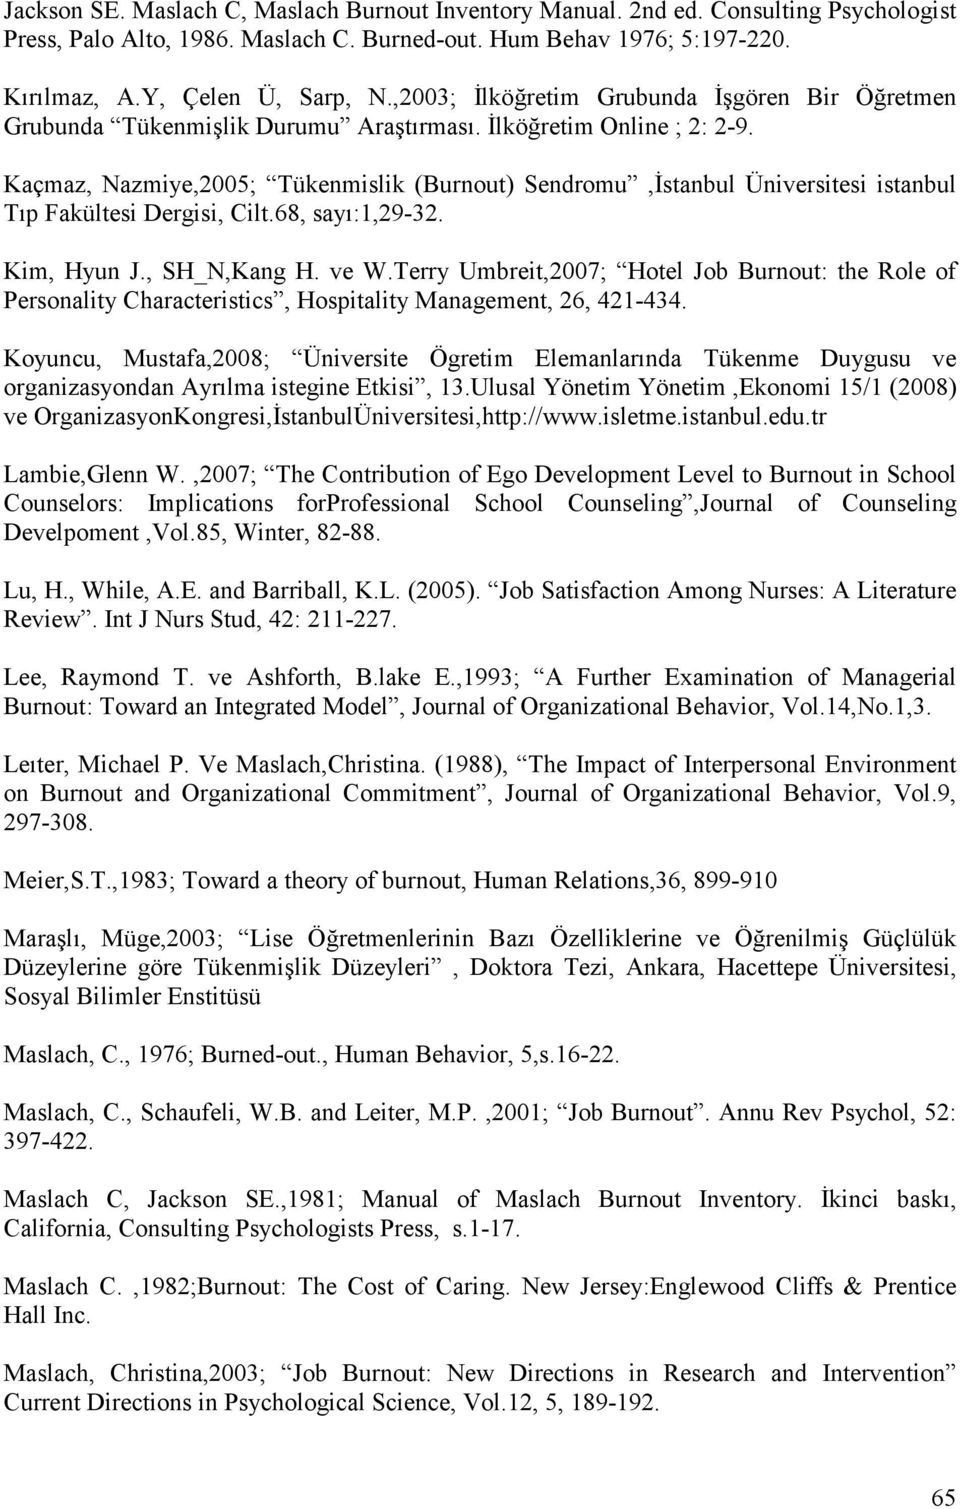 Kaçmaz, Nazmiye,2005; Tükenmislik (Burnout) Sendromu,İstanbul Üniversitesi istanbul Tıp Fakültesi Dergisi, Cilt.68, sayı:1,29-32. Kim, Hyun J., SH_N,Kang H. ve W.